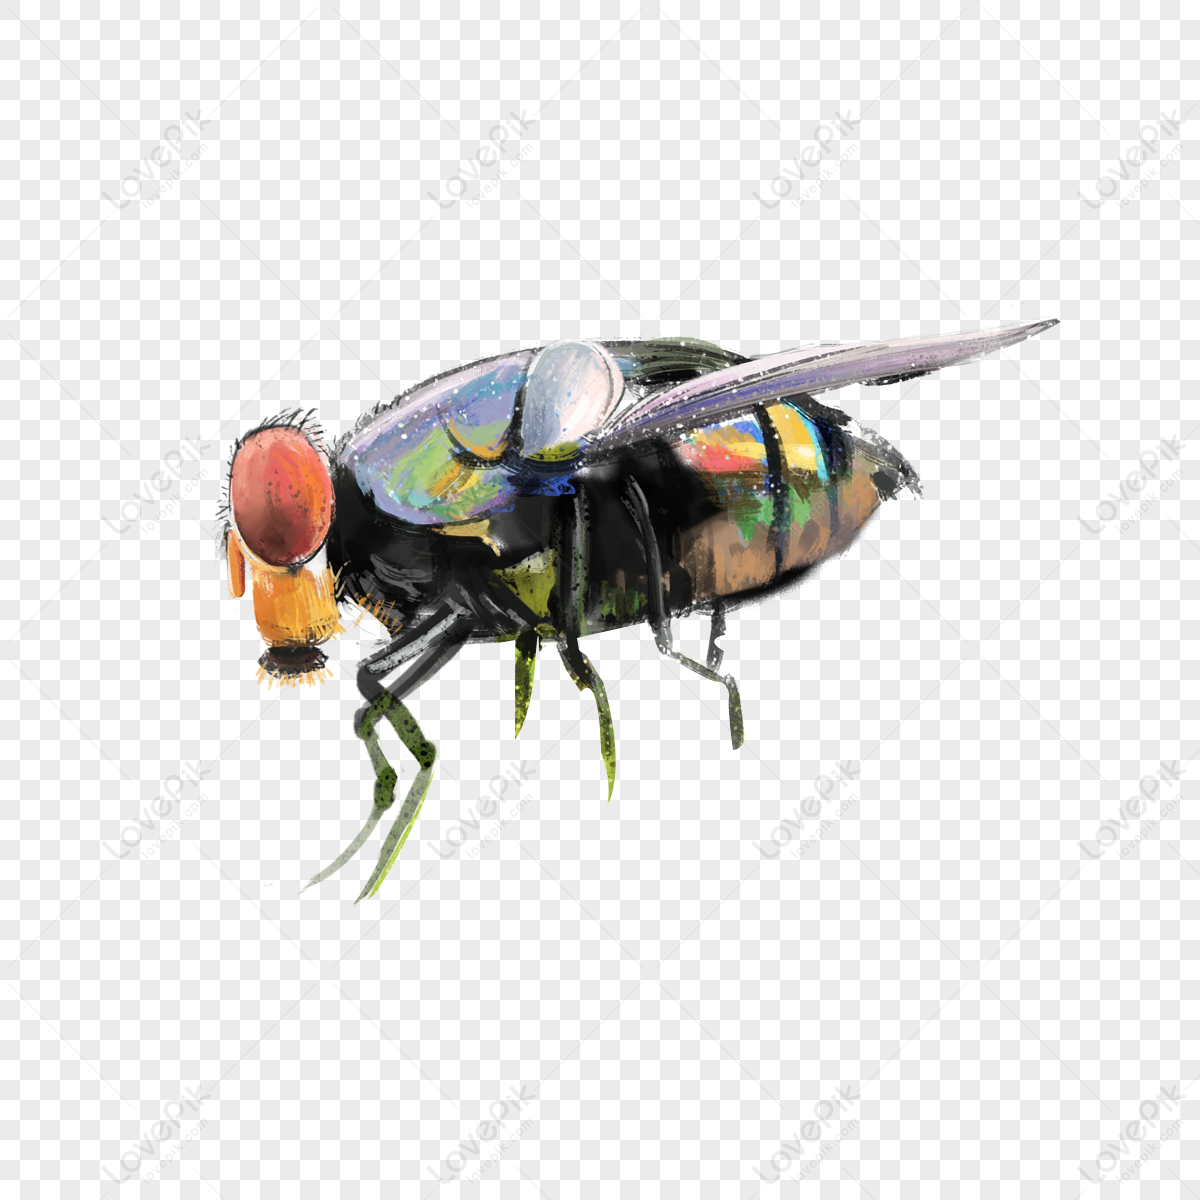 Từ những đường nét đậm chất hội hoạ, hãy cùng tìm hiểu về hình ảnh ruồi được vẽ tay sống động với định dạng PNG. Hình ảnh chất lượng cao sẽ giúp bạn tạo ra những thiết kế trang trí độc đáo, giúp bố trí không gian trở nên sinh động hơn bao giờ hết!